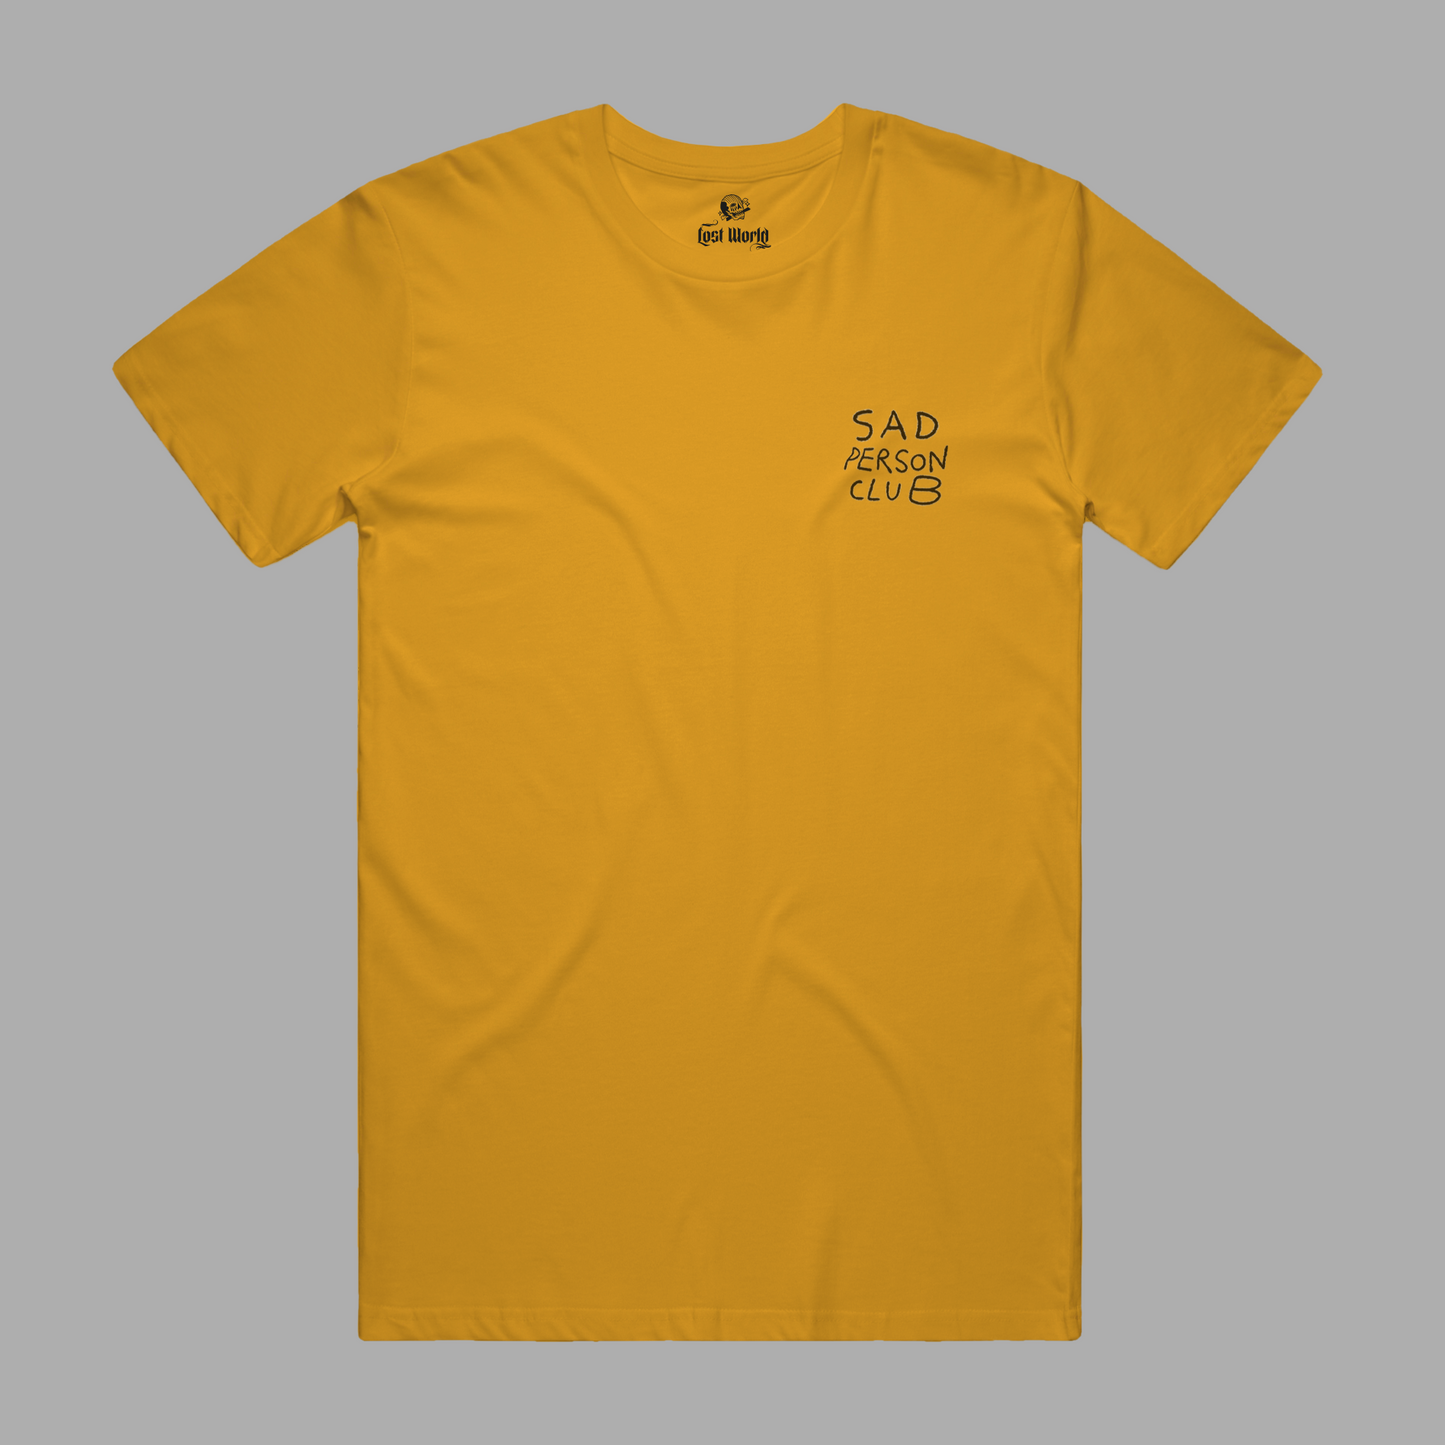 Maglietta gialla del club della persona triste